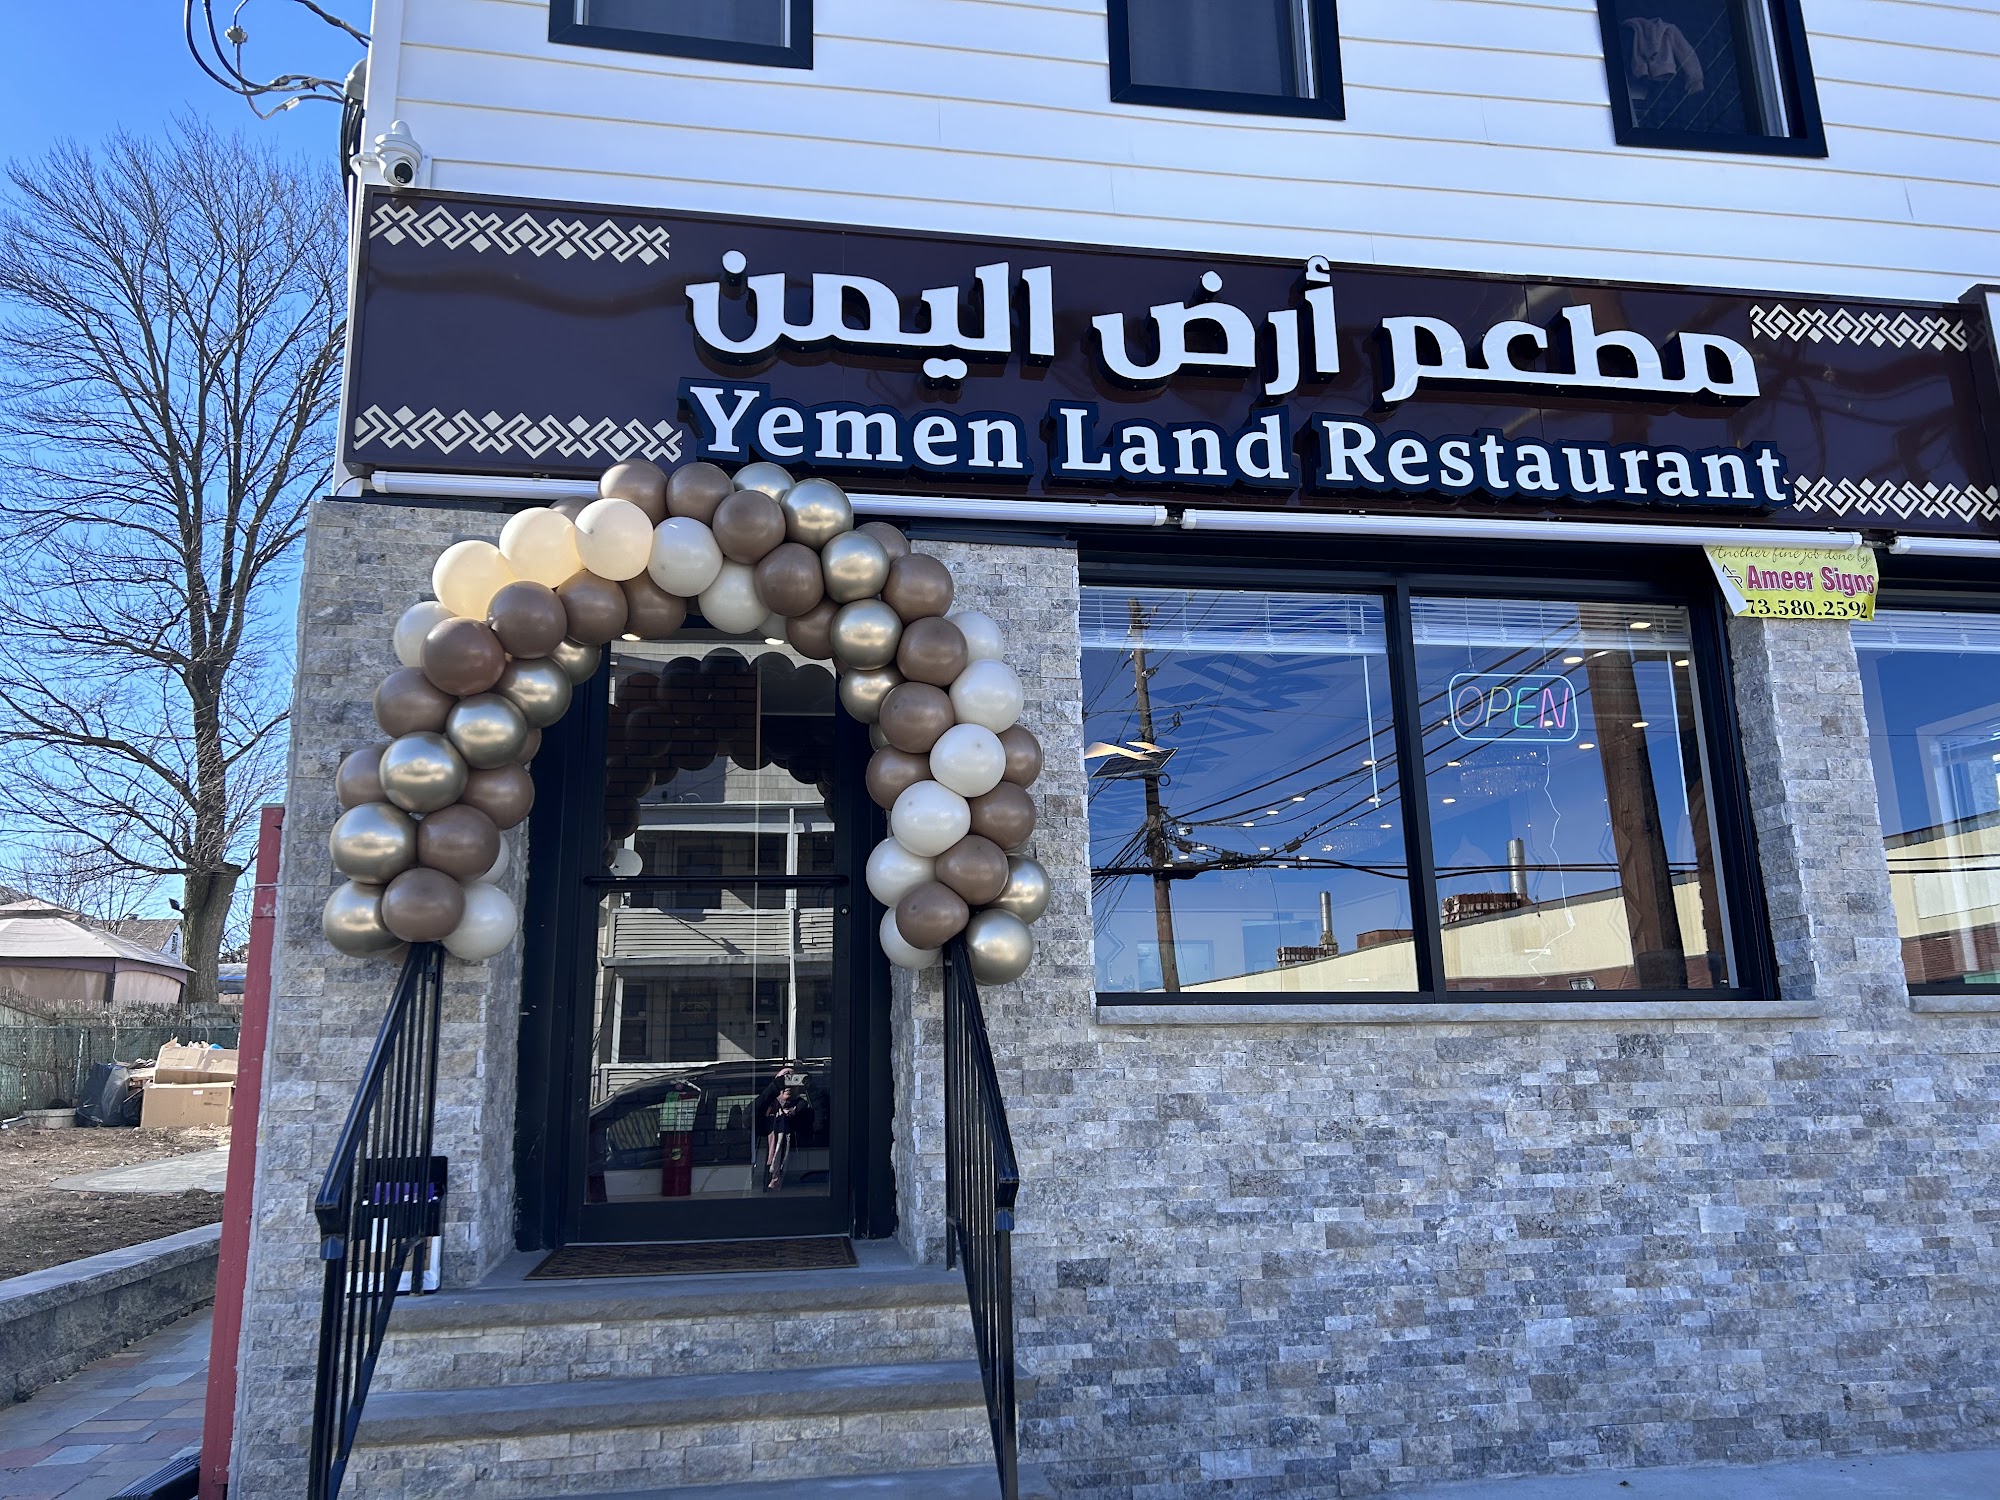 Yemen Land Restaurant 304 Getty Ave, Paterson